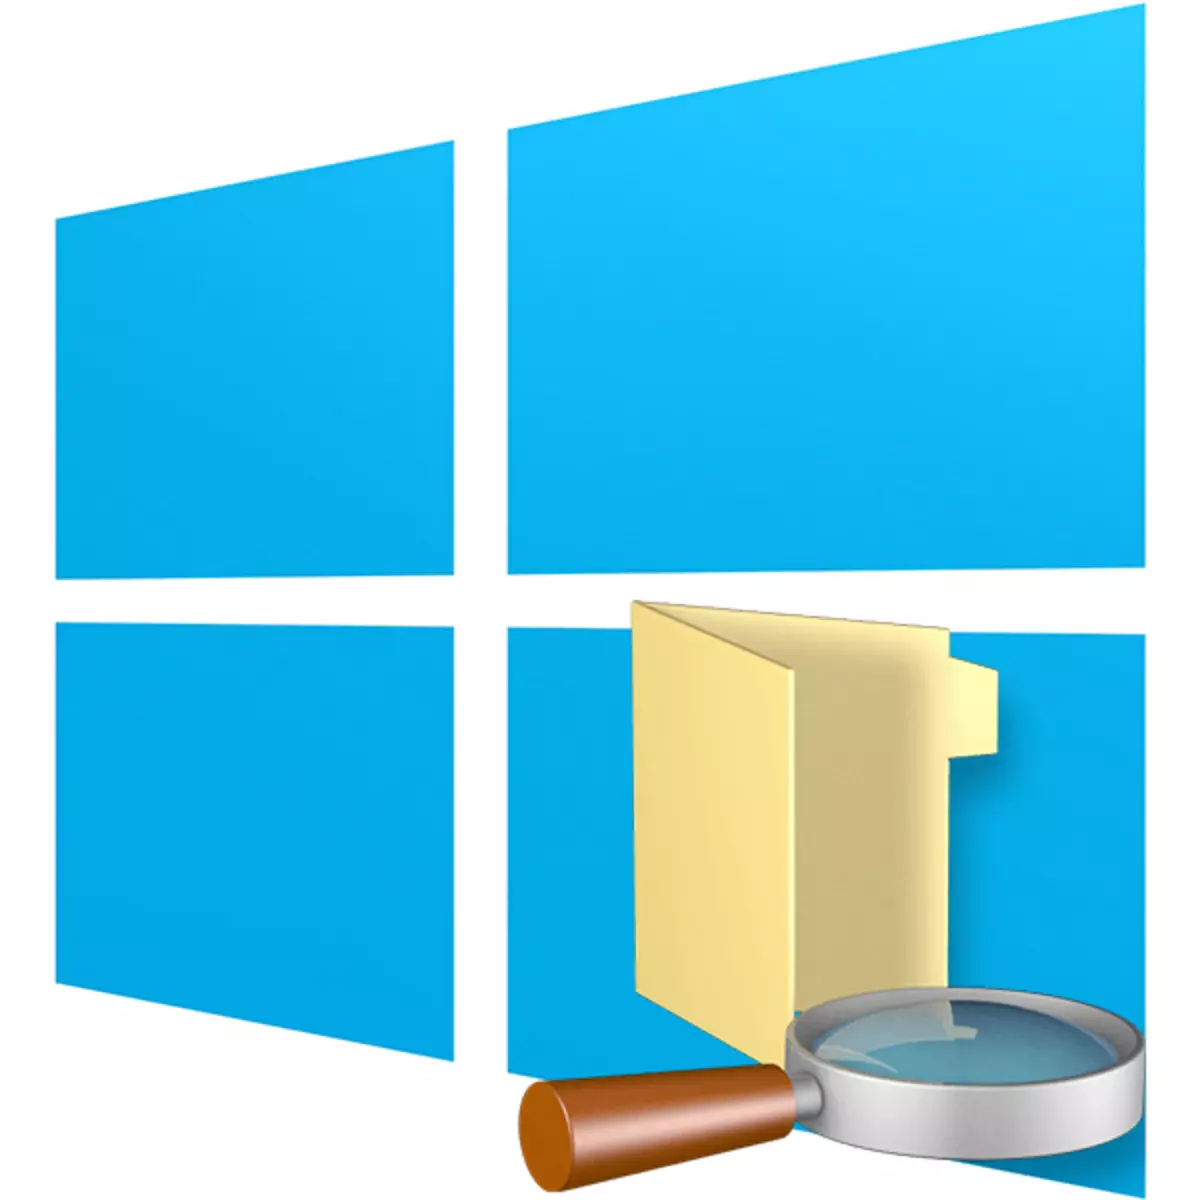 Nigute ushobora kubona dosiye kuri mudasobwa ifite Windows 10